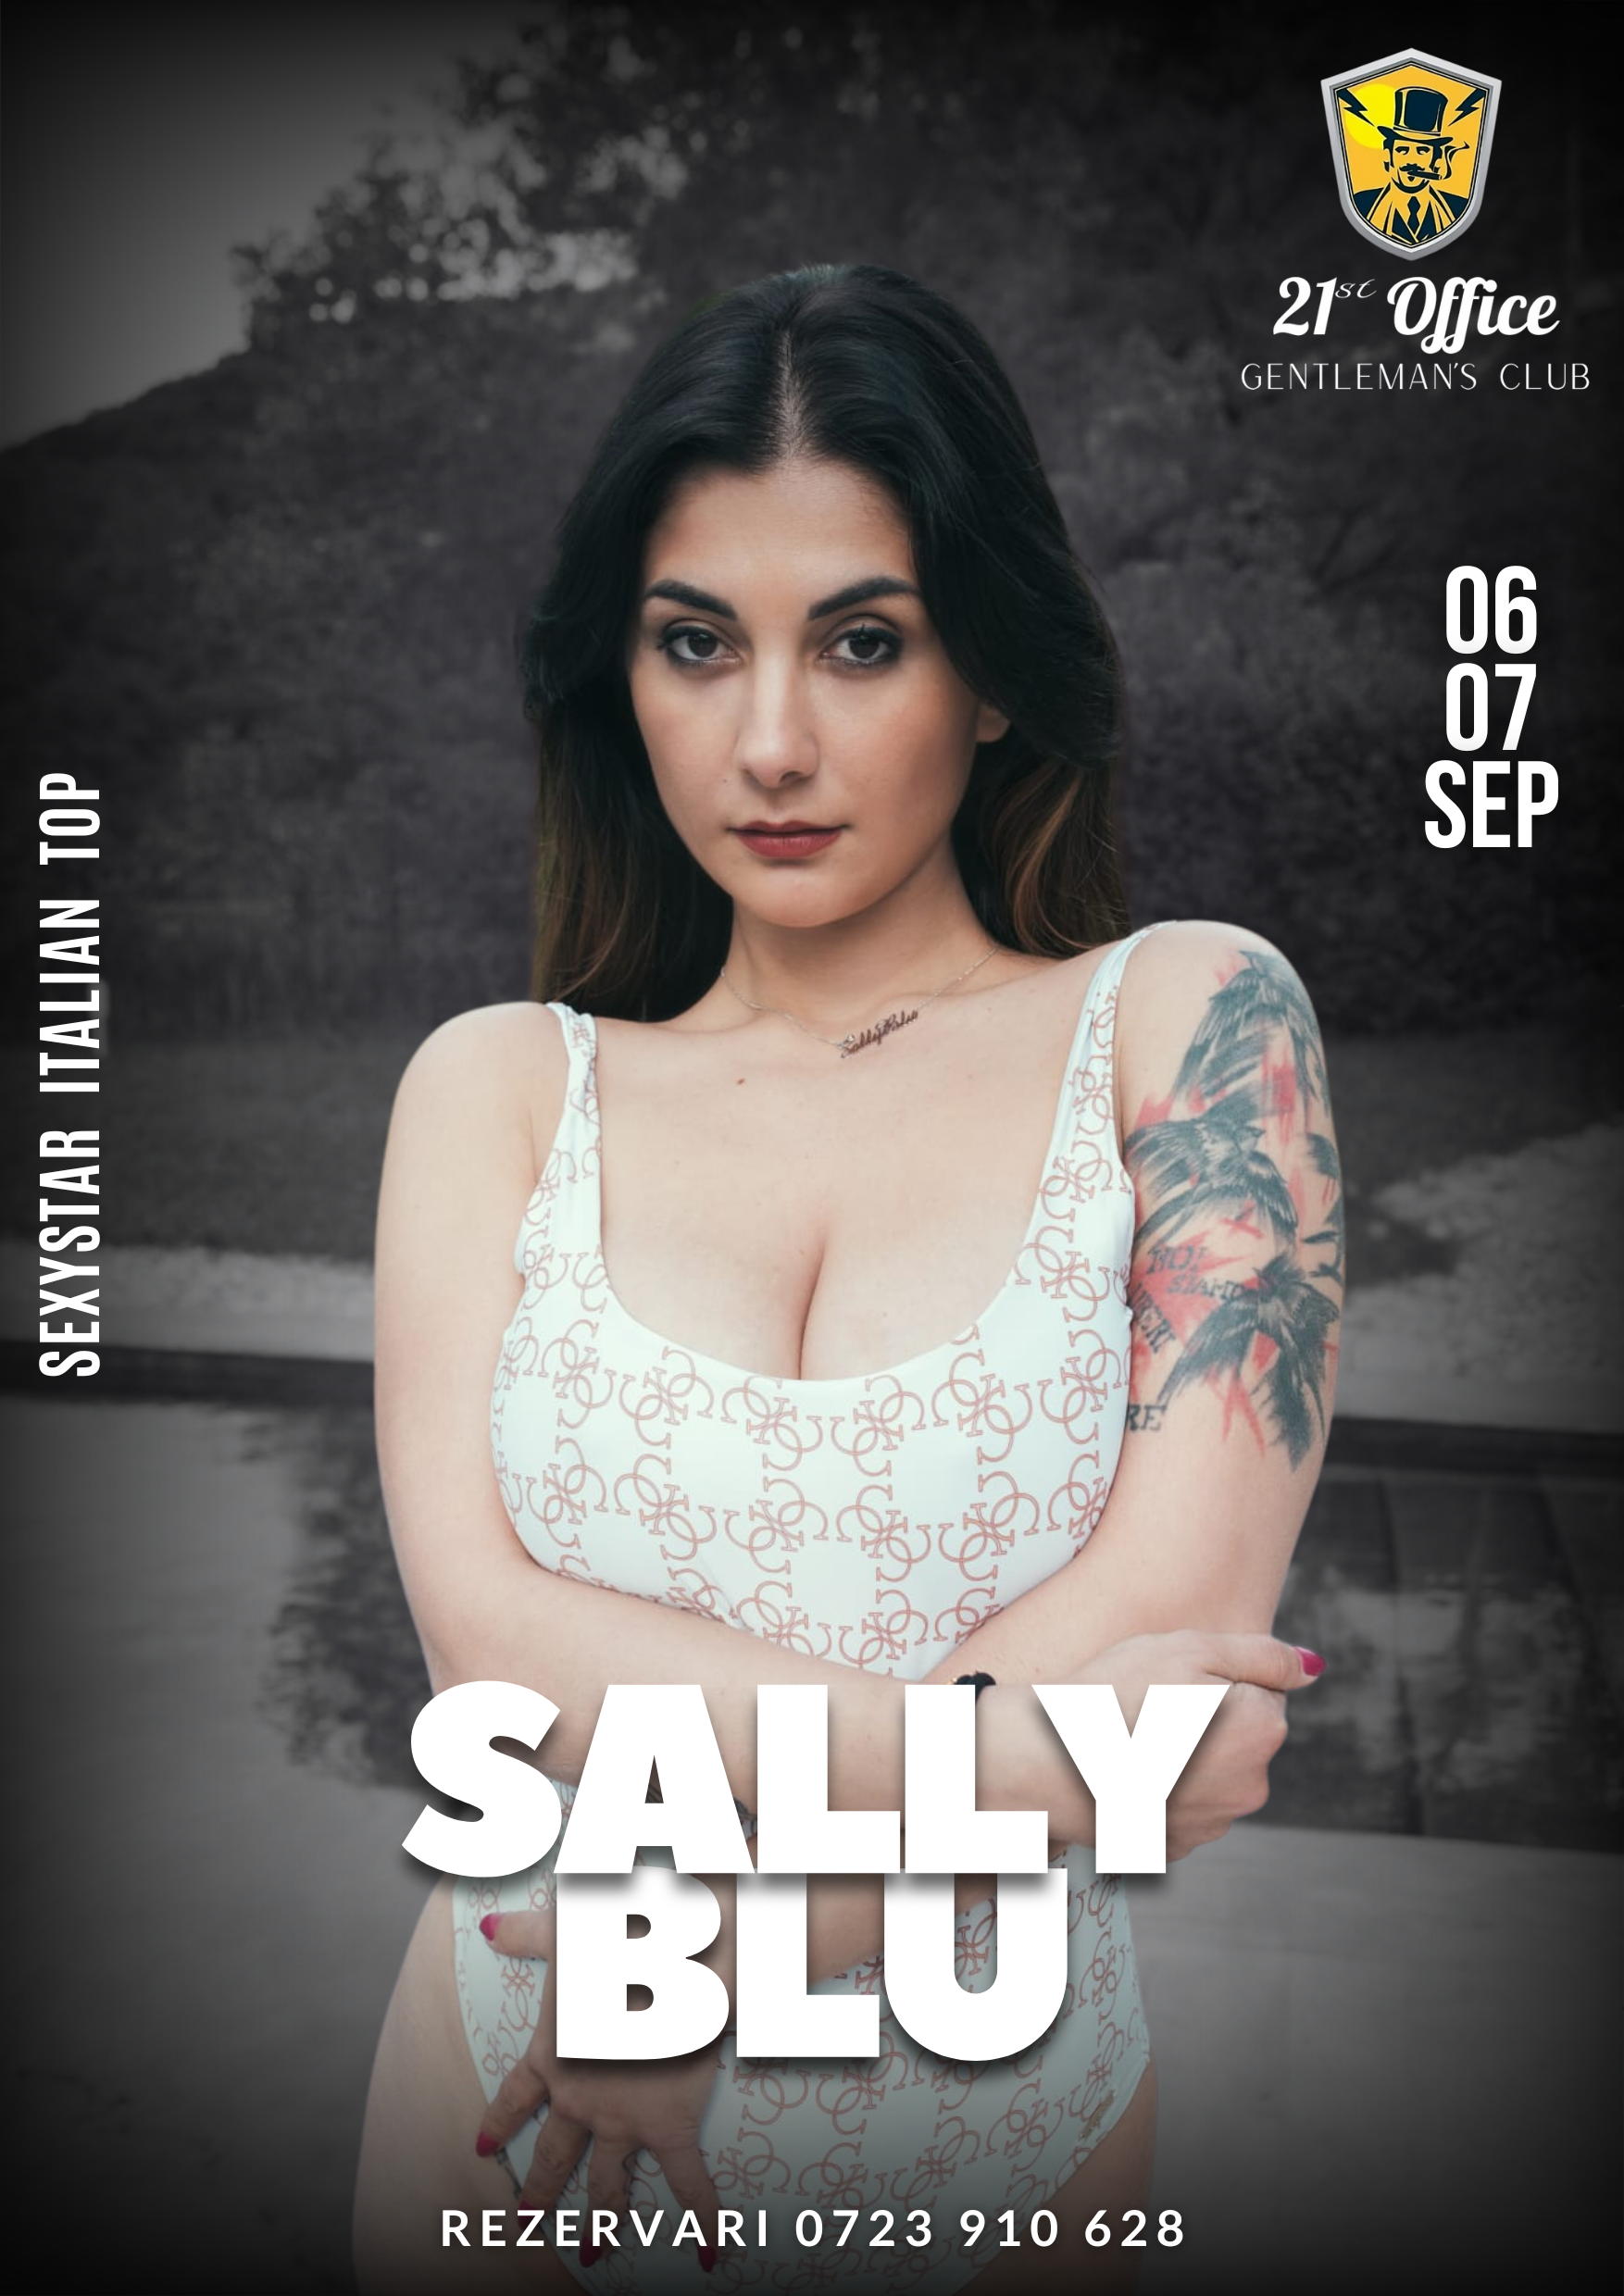 Show de striptease intretinut de pornstarul italian Sally Blu pe 06 si 07 septembrie la 21 Office Gentlemans Club